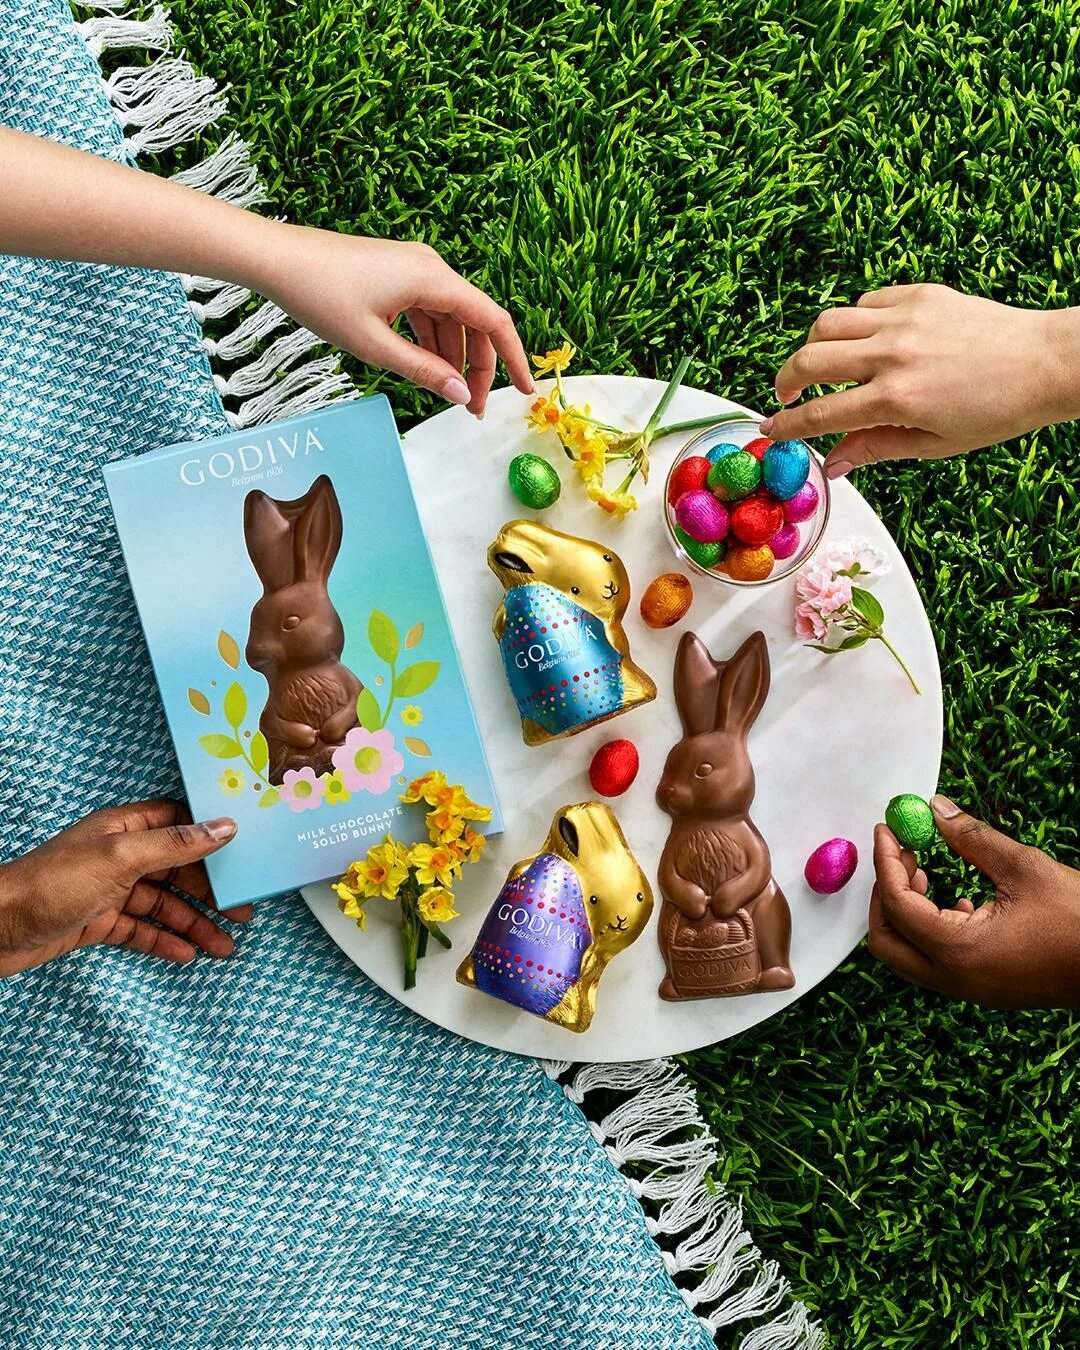 GODIVA Ð² Instagram: "Still need to pick up some Easter treats? 